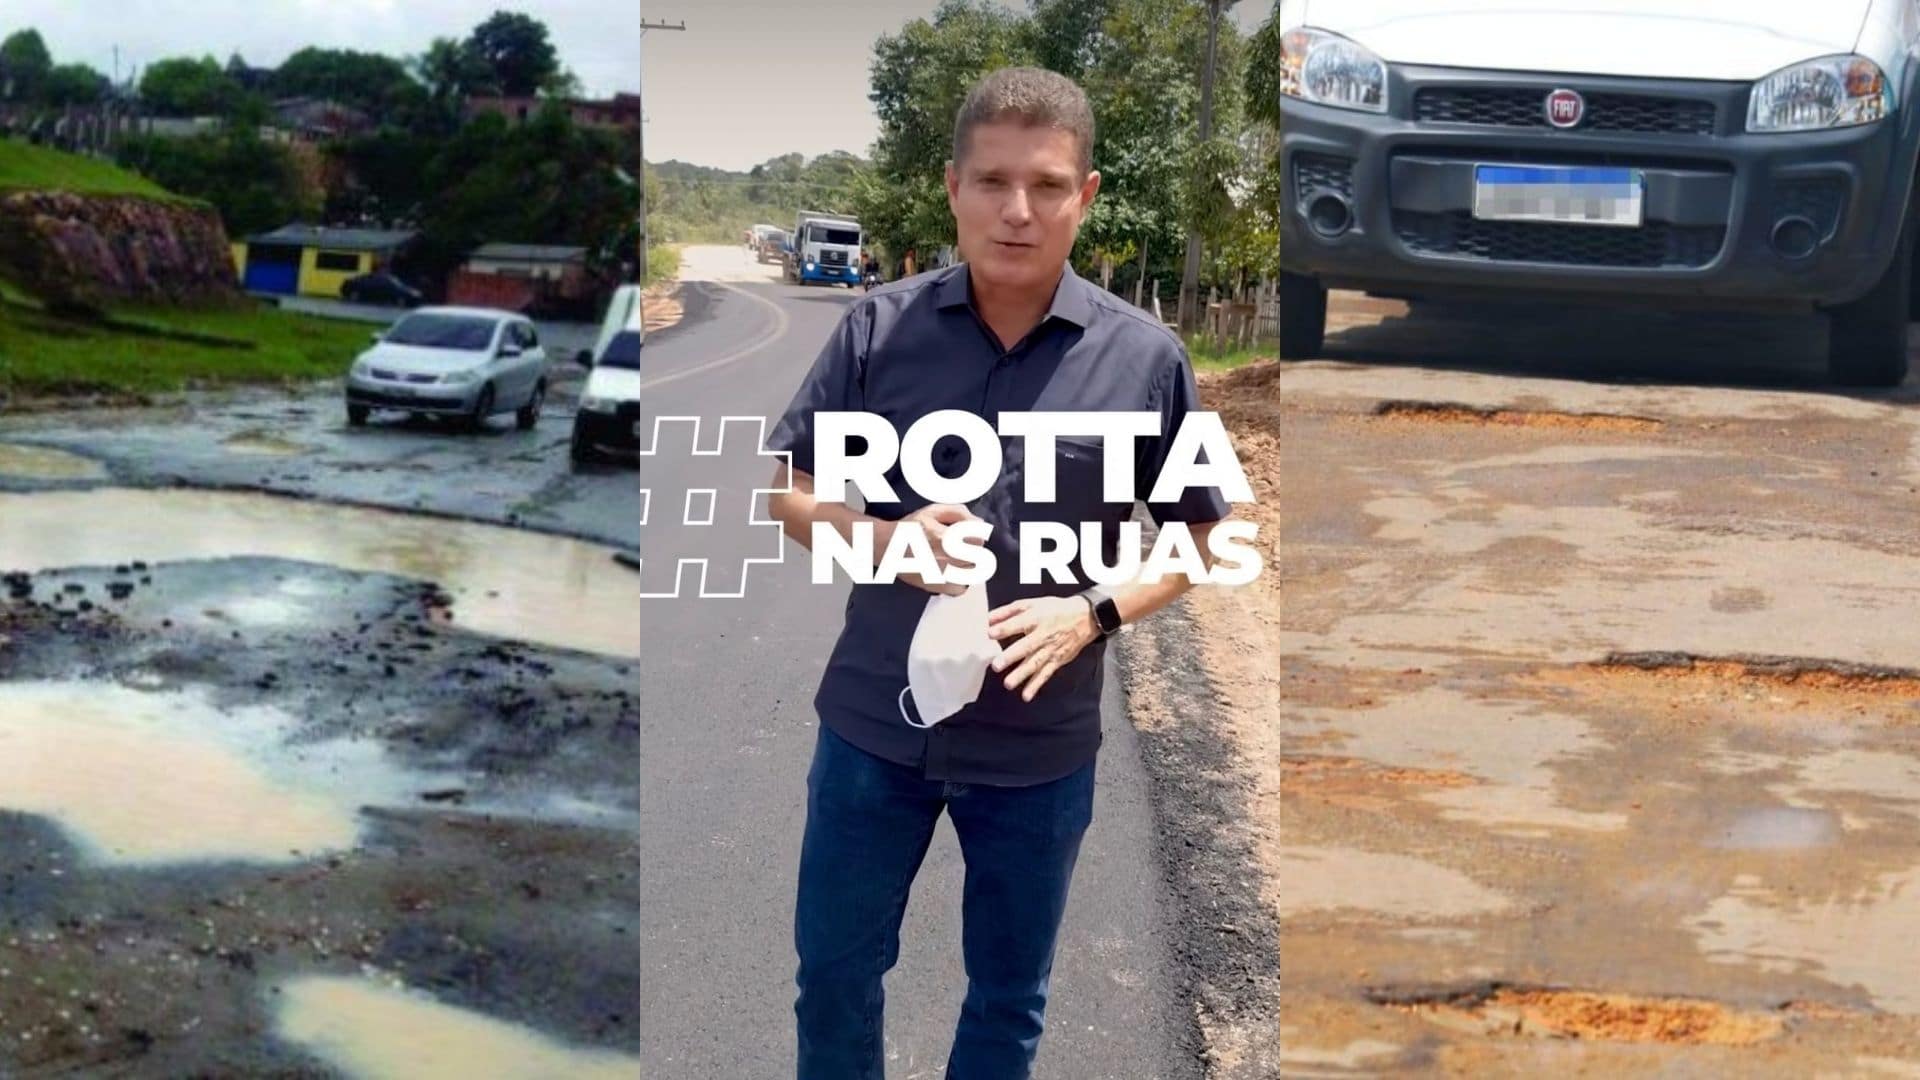 Rotta se exibe com 'trabalho' nas redes sociais, mas ignorou demanda dos moradores de Manaus